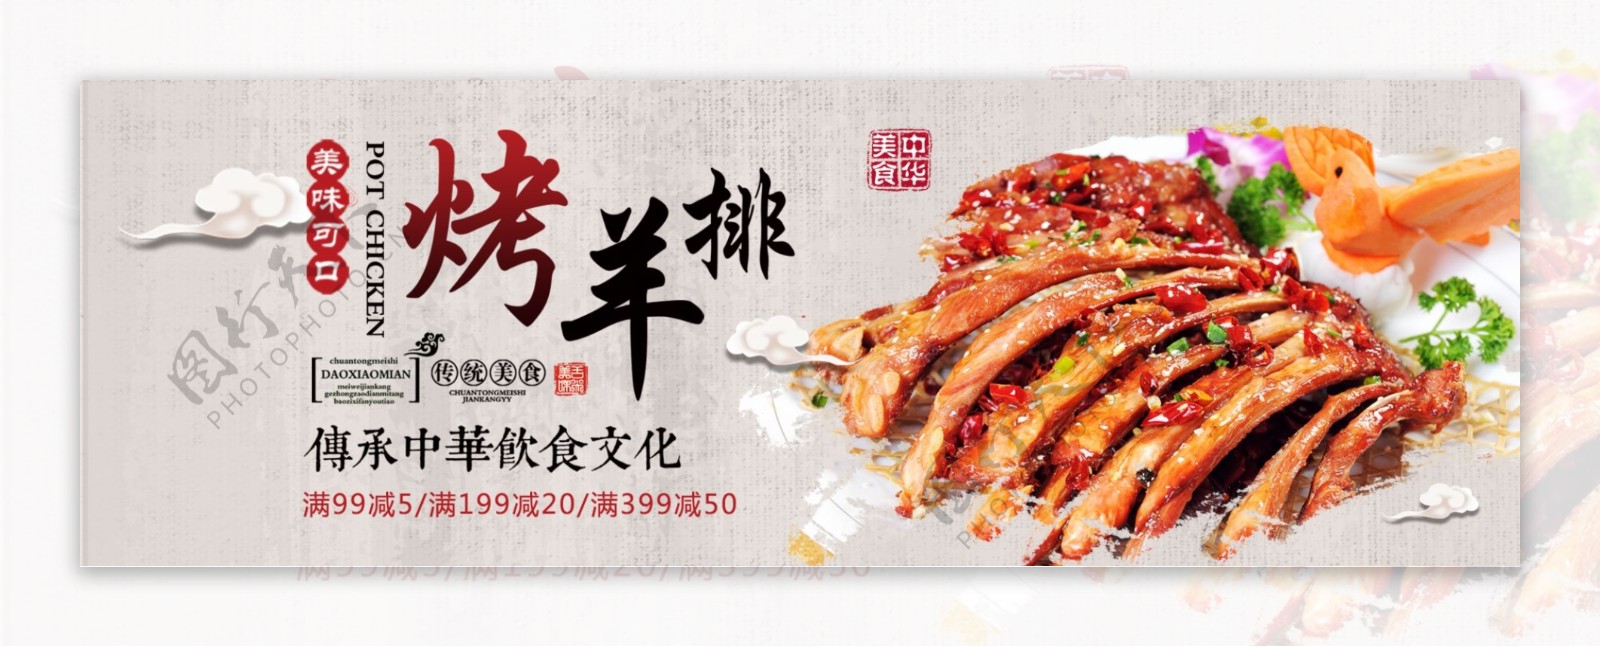 中国风中华美食熟食烤羊排淘宝banner电商海报